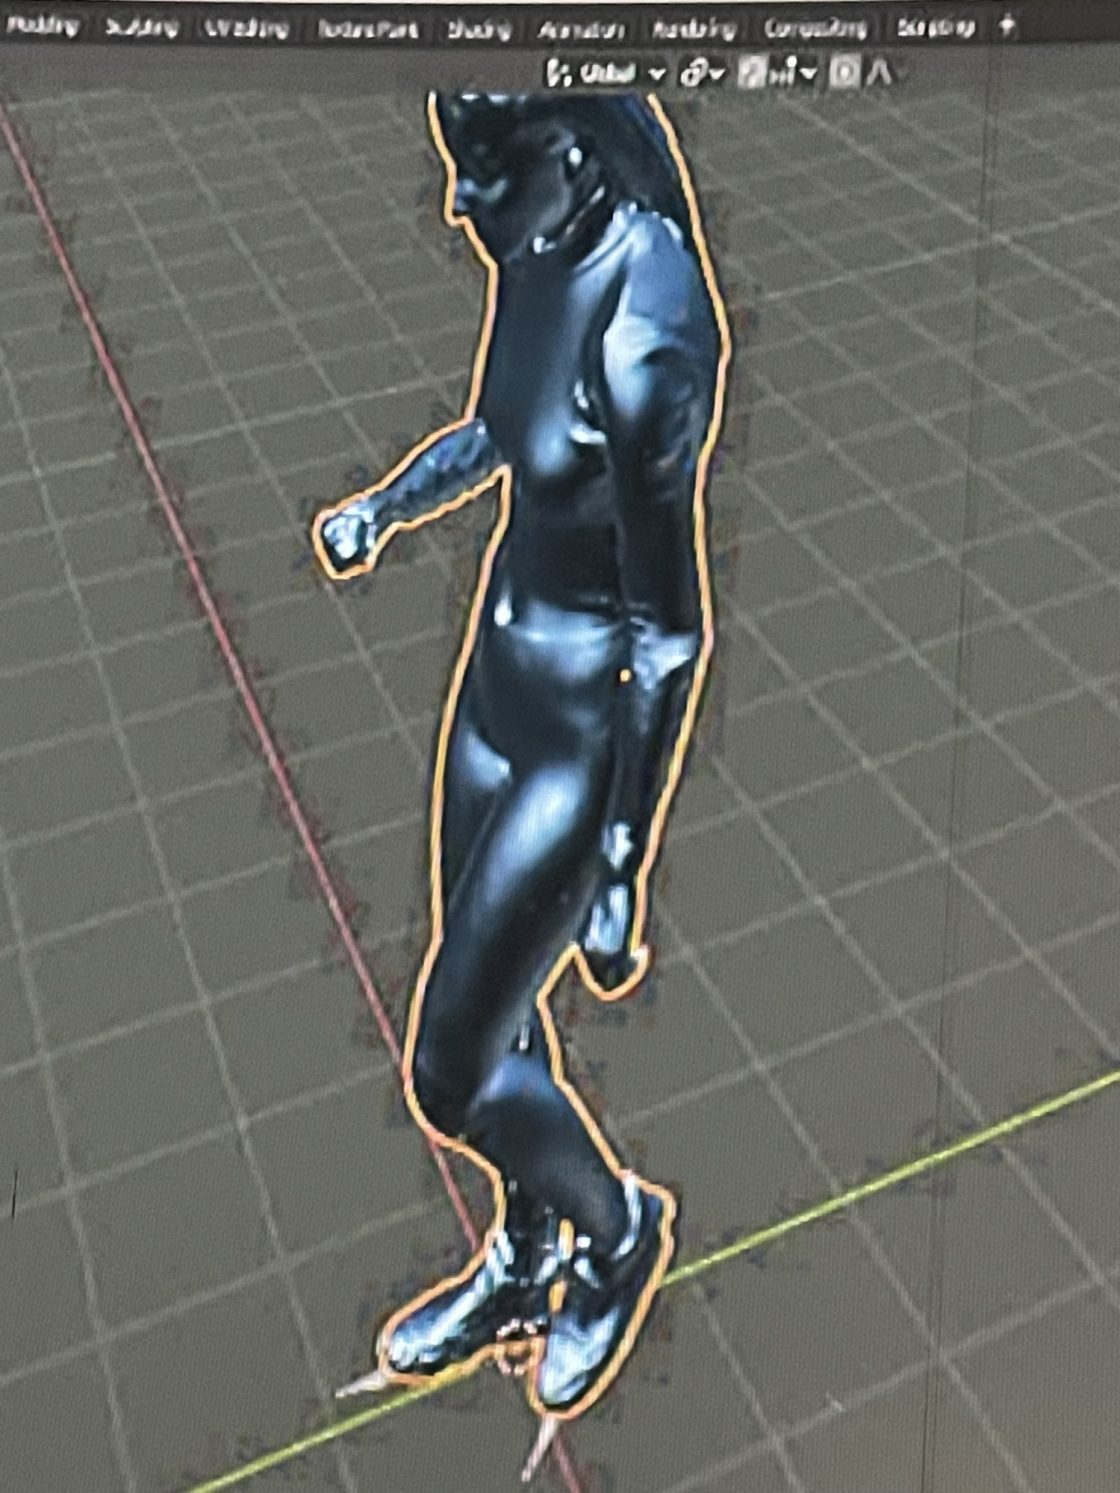 3D scan van danser met onnatuurlijke borsten